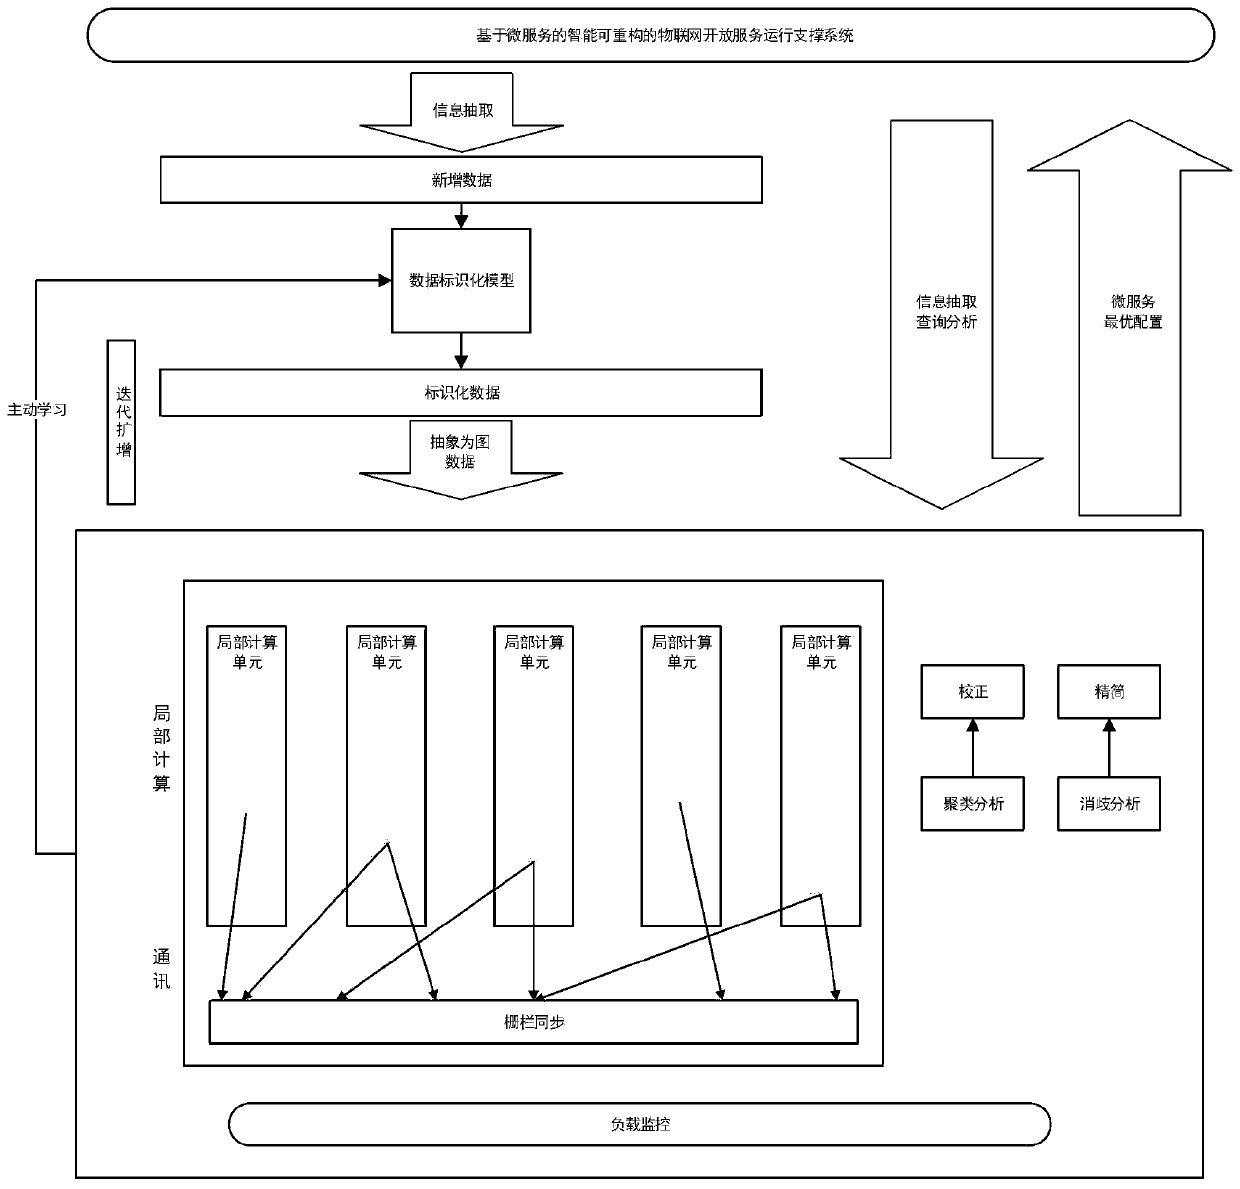 Identified association graph self-optimization mechanism